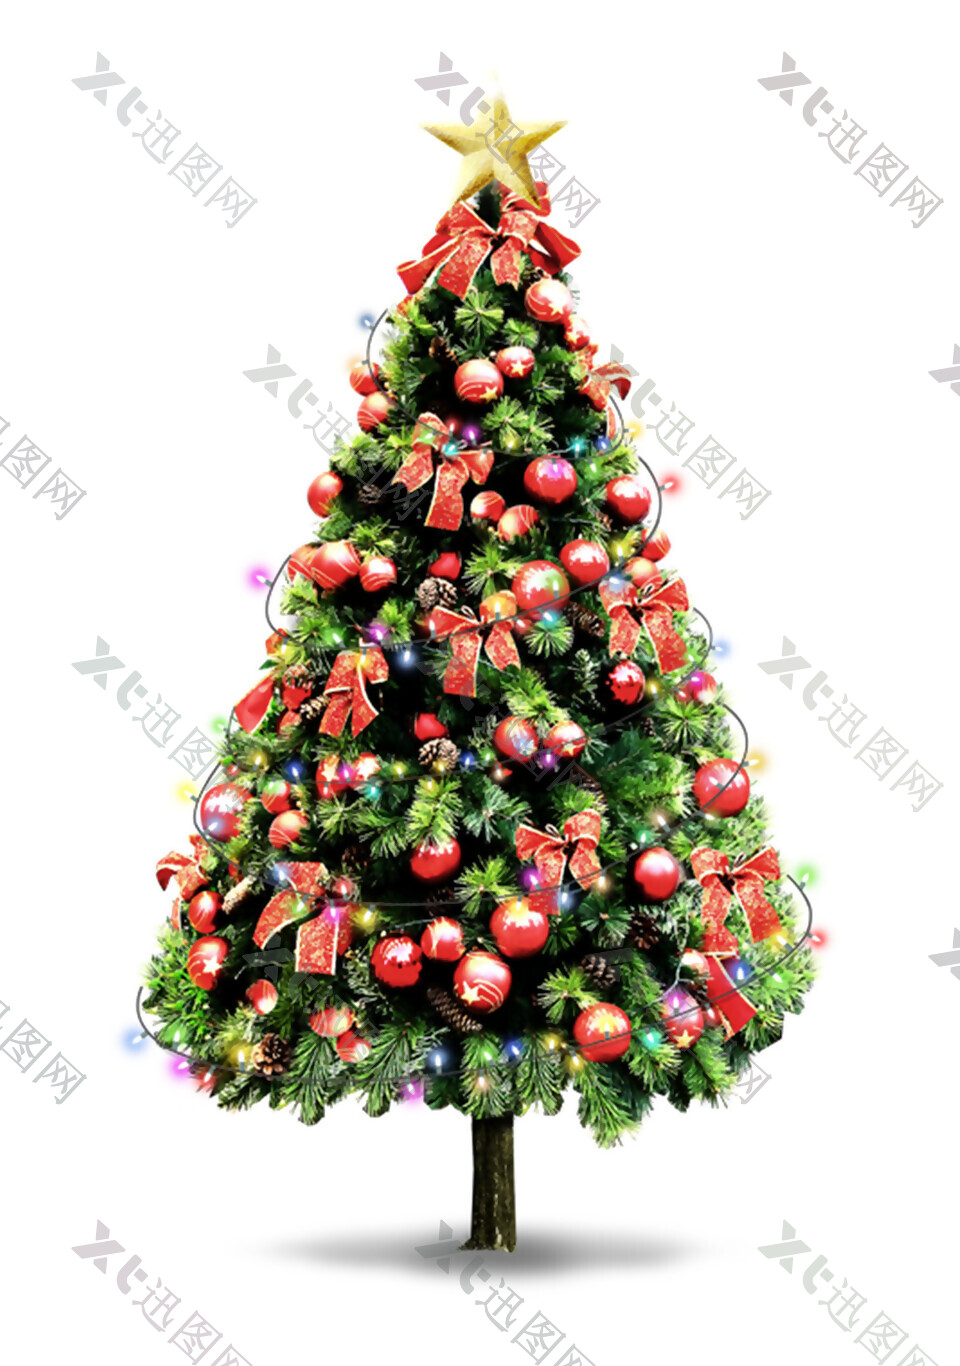 挂满吊球蝴蝶结装饰的圣诞树元素